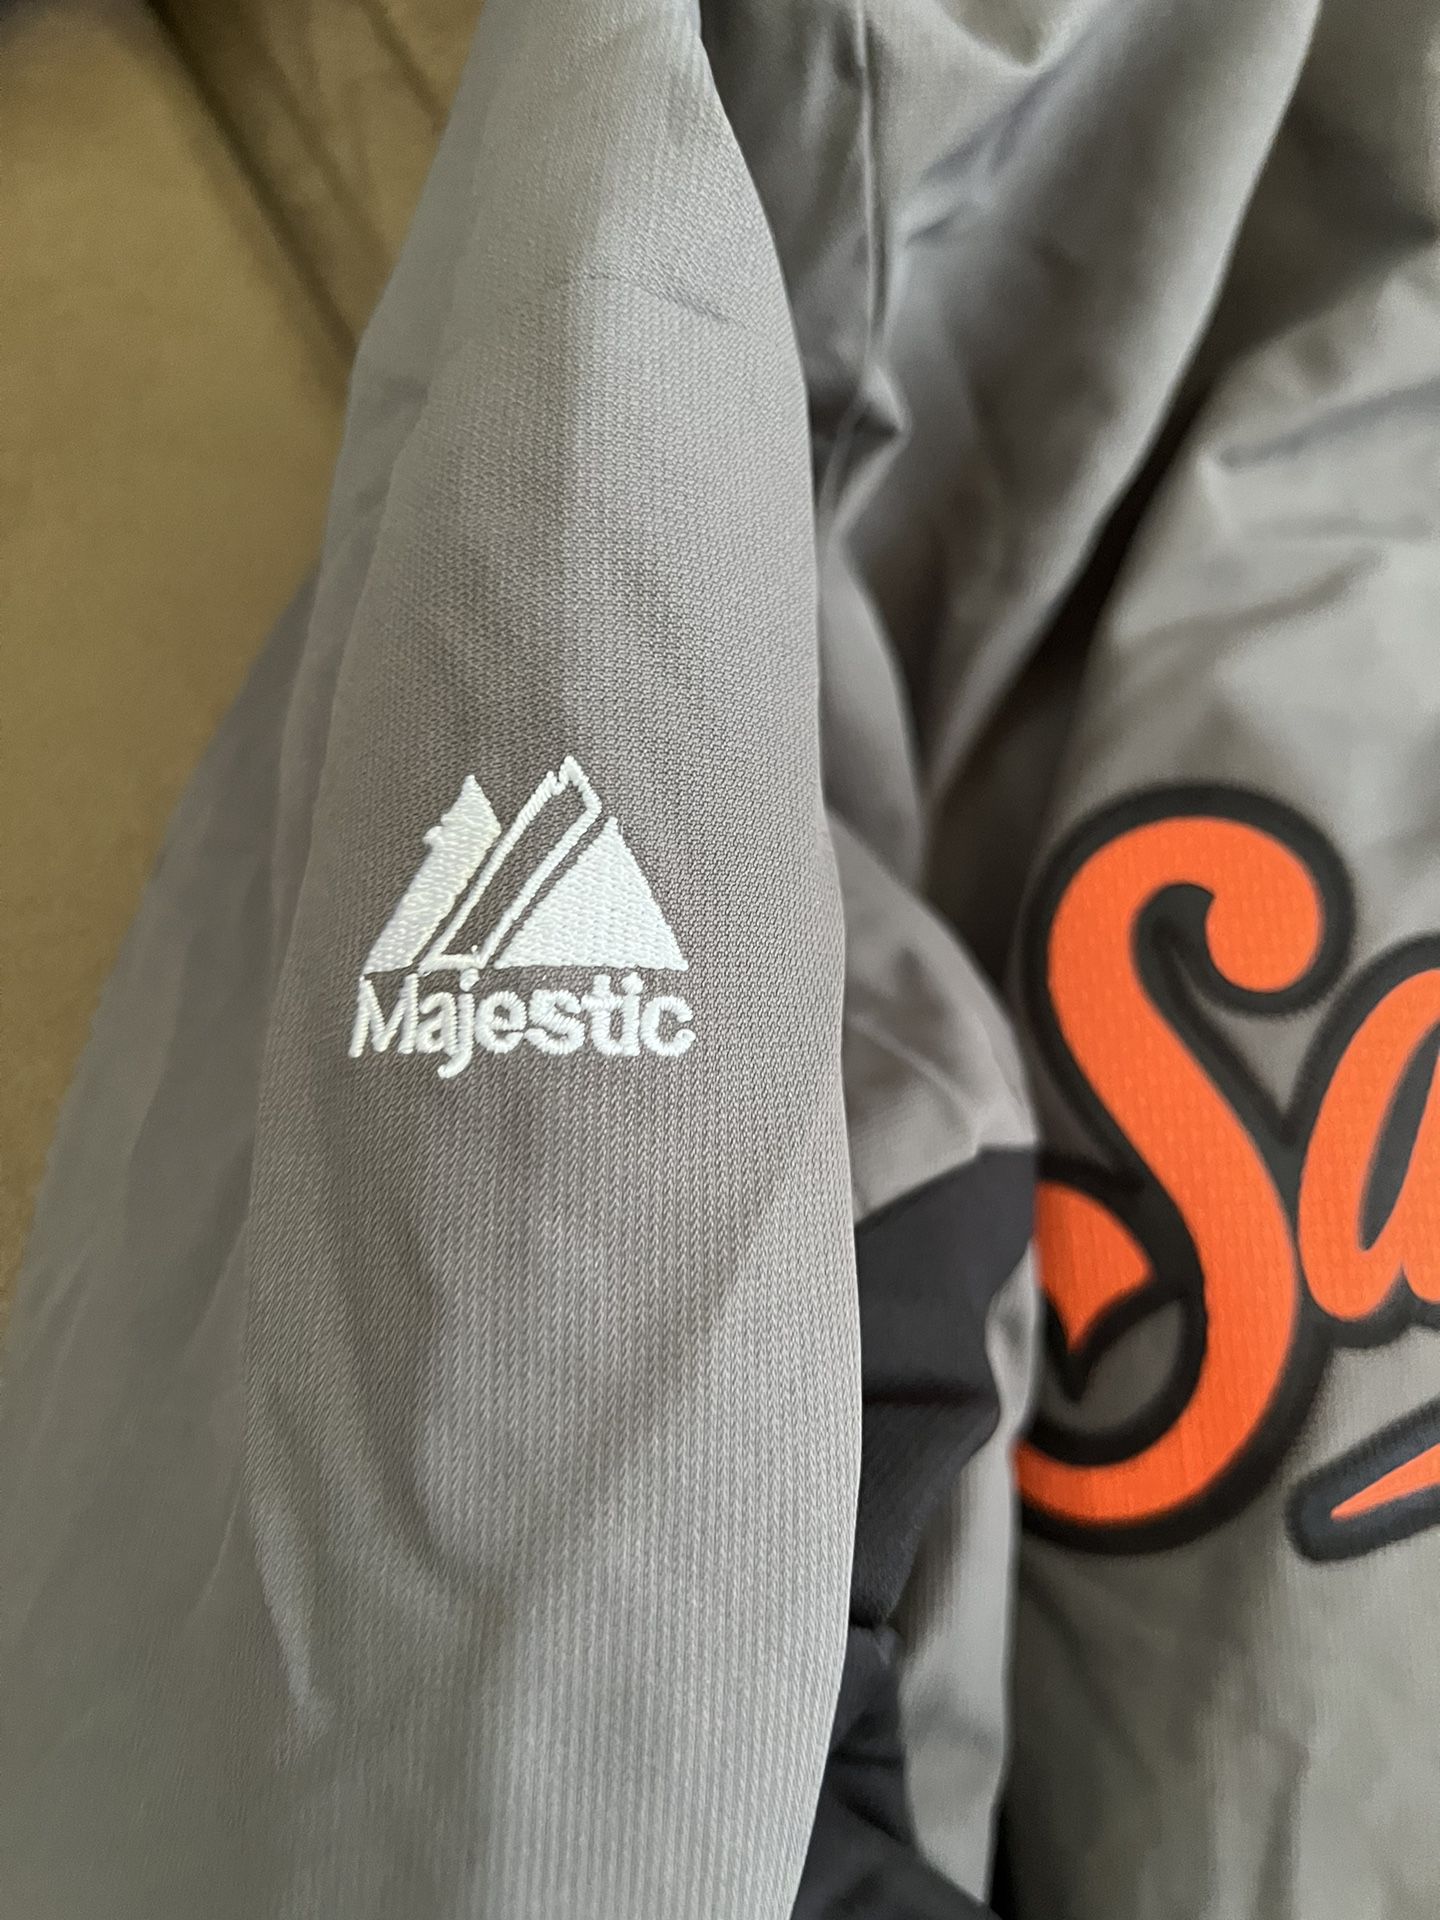 Majestic Athletic SF Windbreaker Jacket for Sale in San Jose, CA - OfferUp